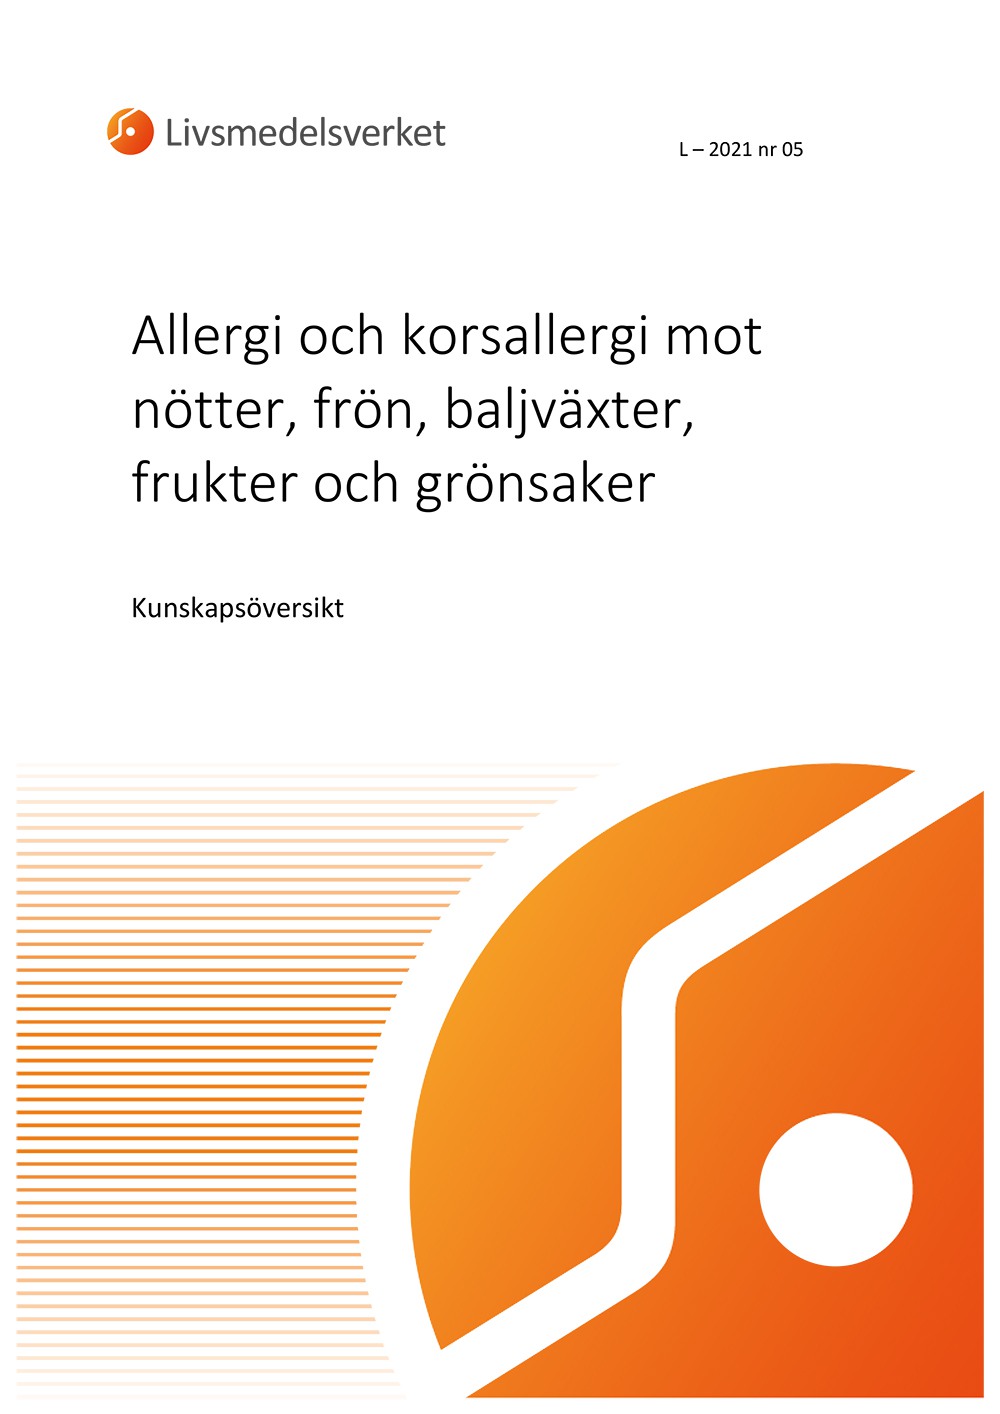 Framsidan av rapport L 2021 nr 05 - Allergi och korsallergi.